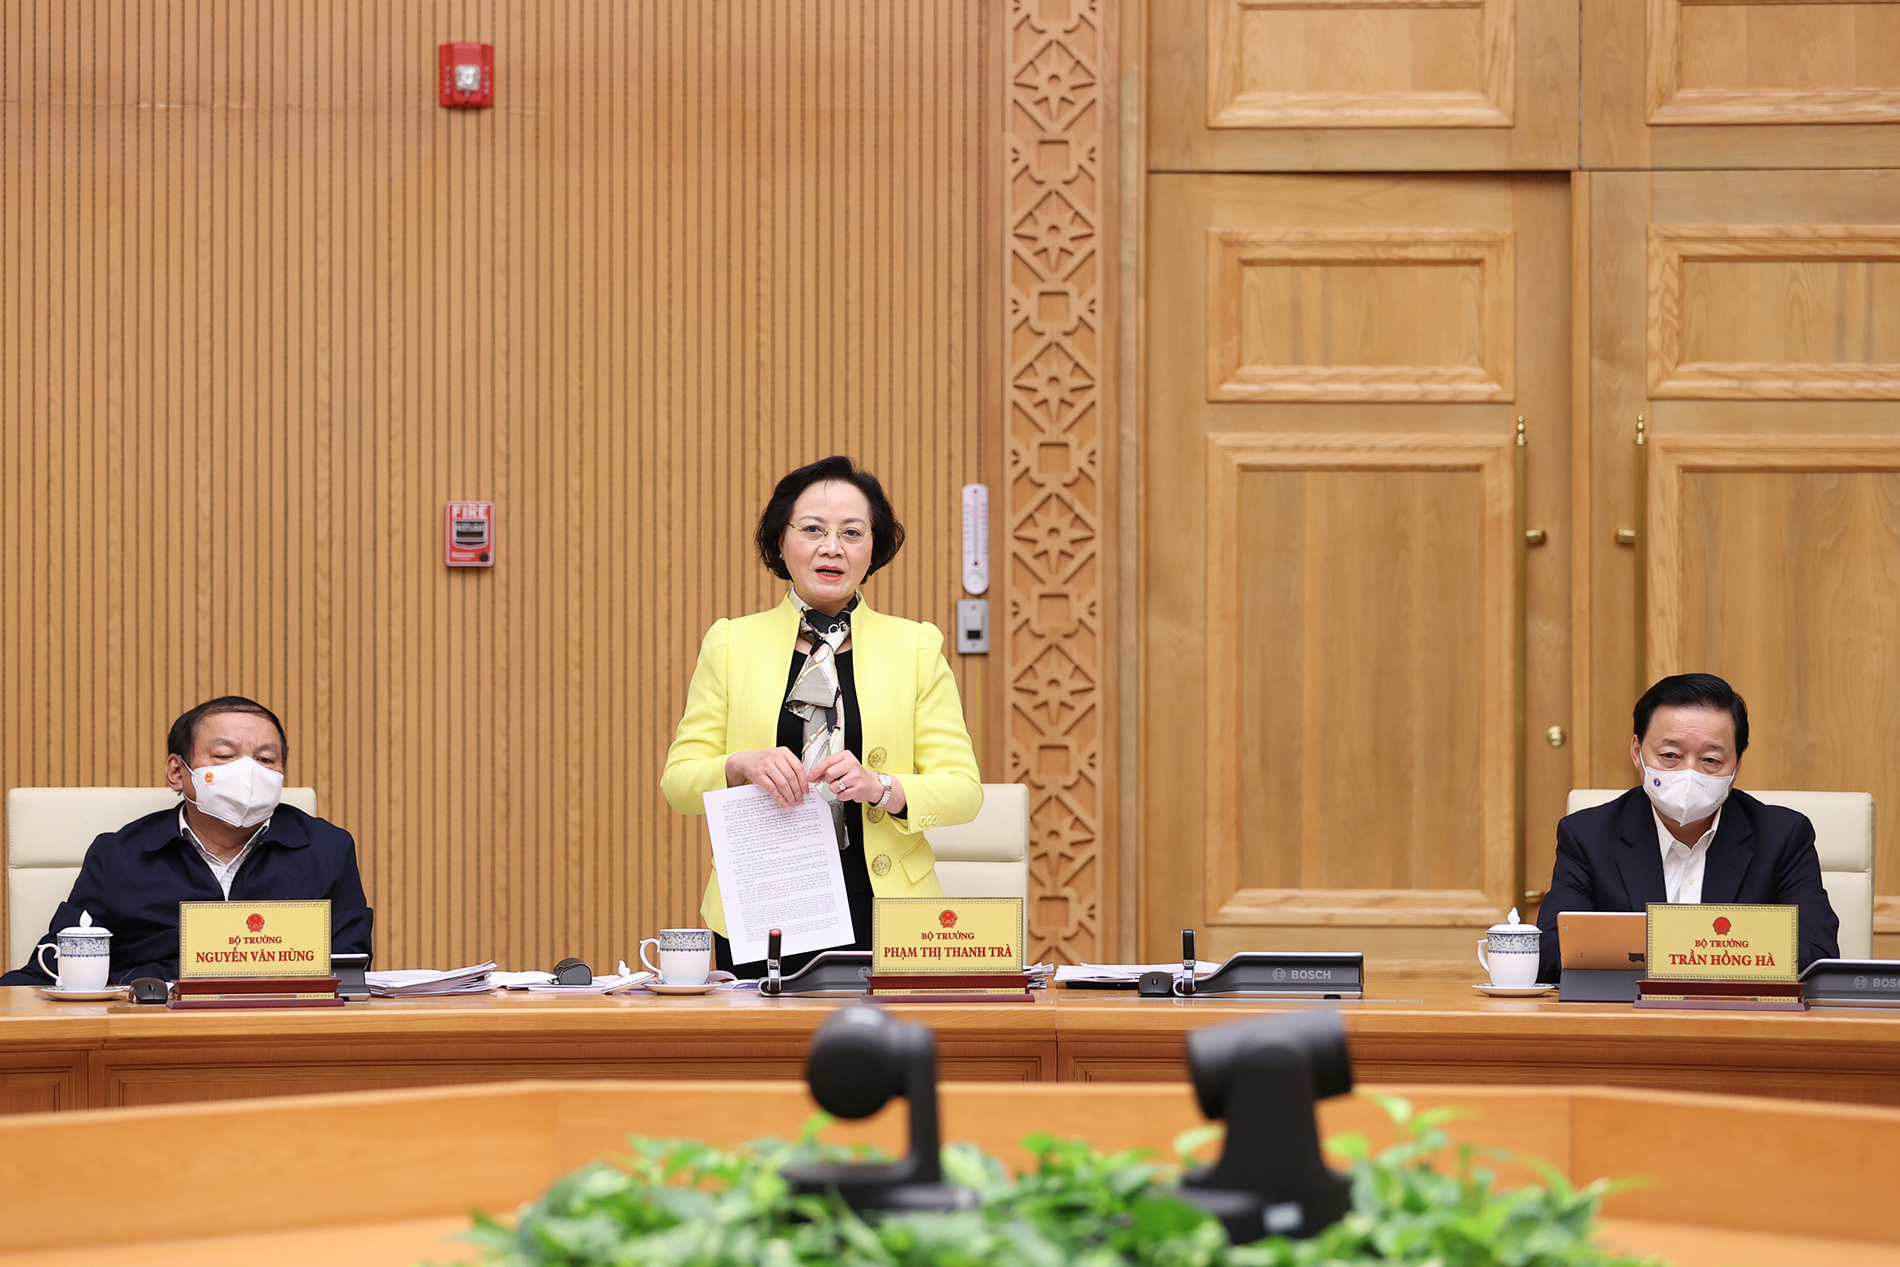 Loạt ảnh: Thủ tướng chủ trì Phiên họp chính phủ chuyên đề về xây dựng pháp luật - Ảnh 8.